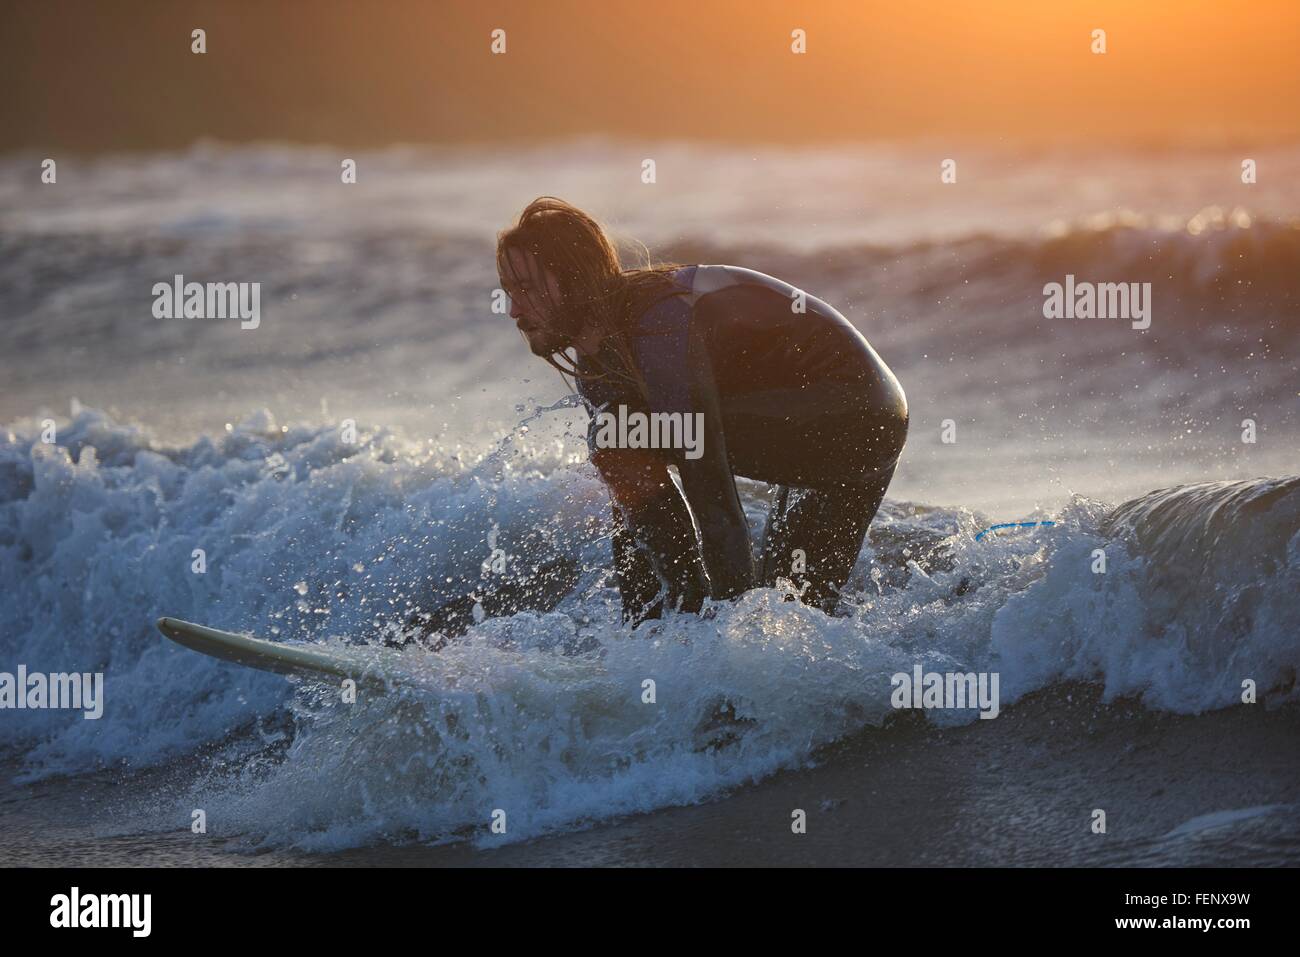 Jeune homme surf surfer sur la vague de l'océan, Devon, England, UK Banque D'Images